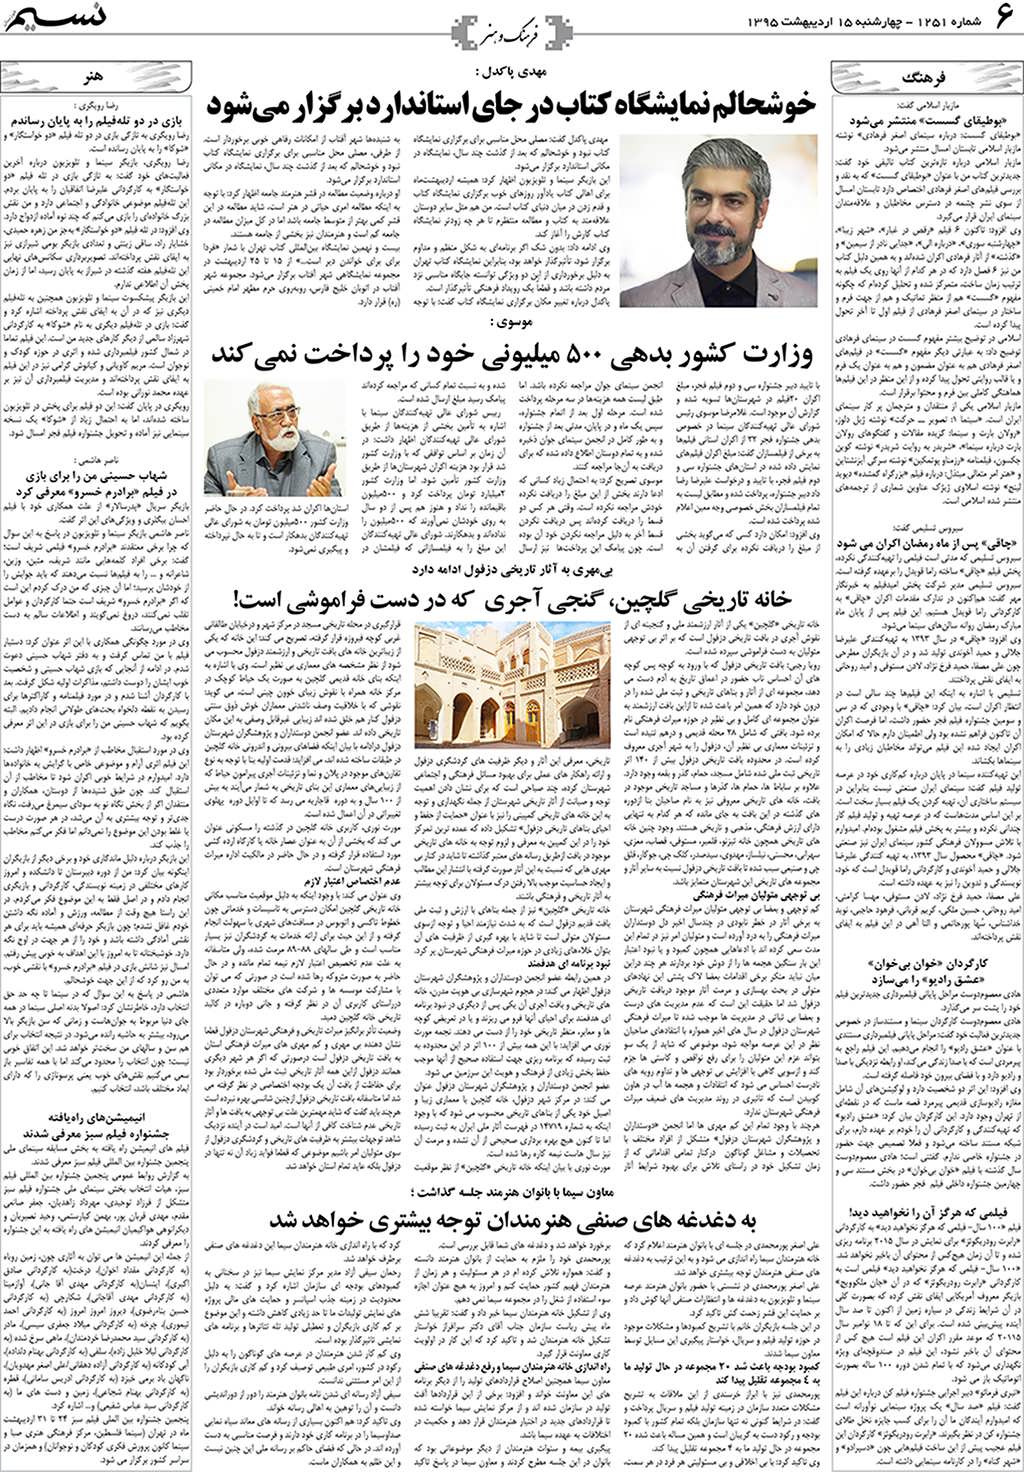 صفحه فرهنگ و هنر روزنامه نسیم شماره 1251